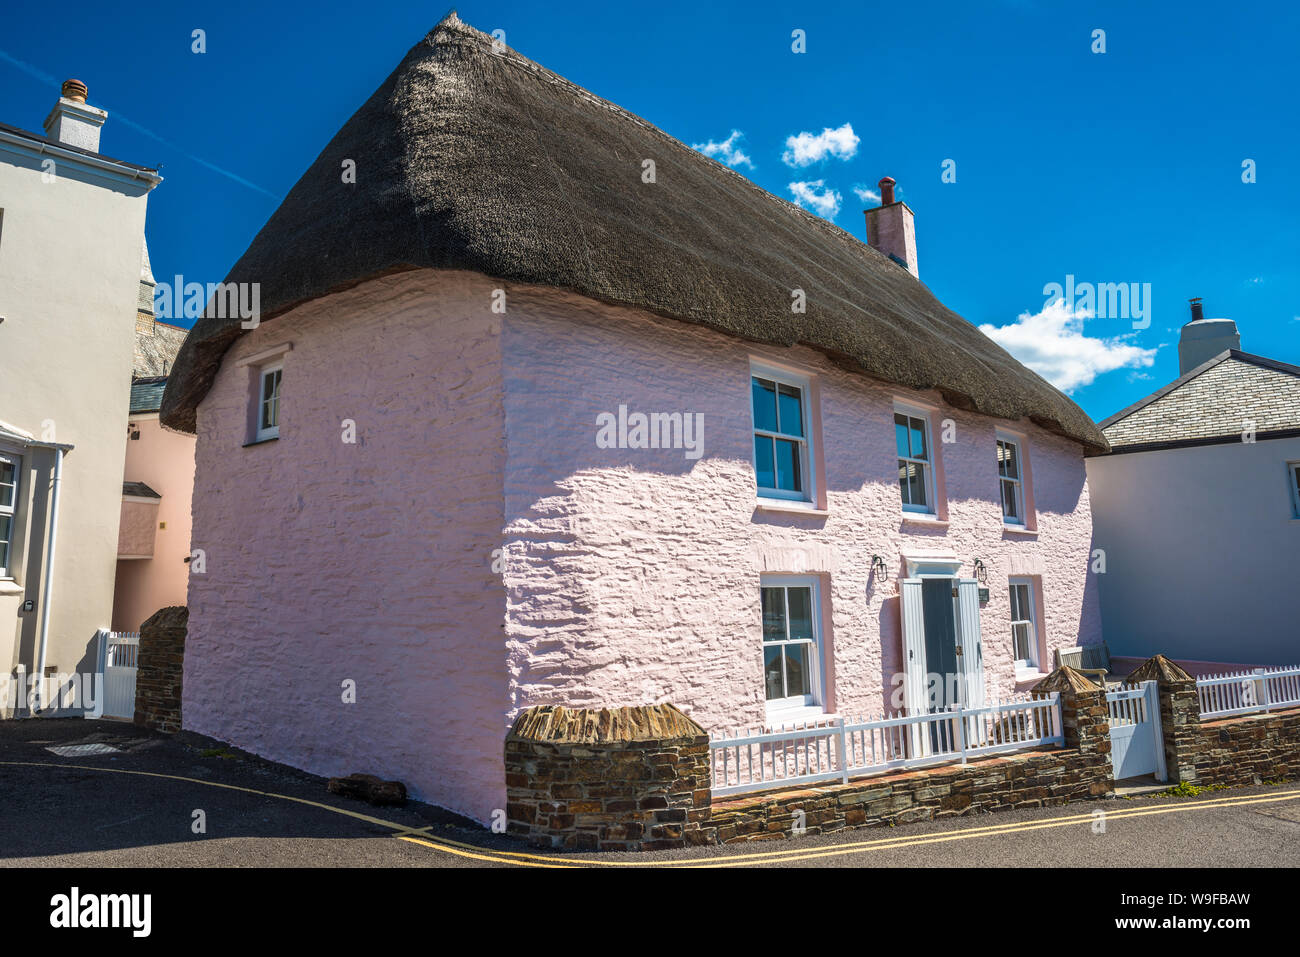 Le village pittoresque de St Mawes sur la péninsule de Roseland près de Falmouth en Cornouailles, Angleterre, Royaume-Uni. Banque D'Images